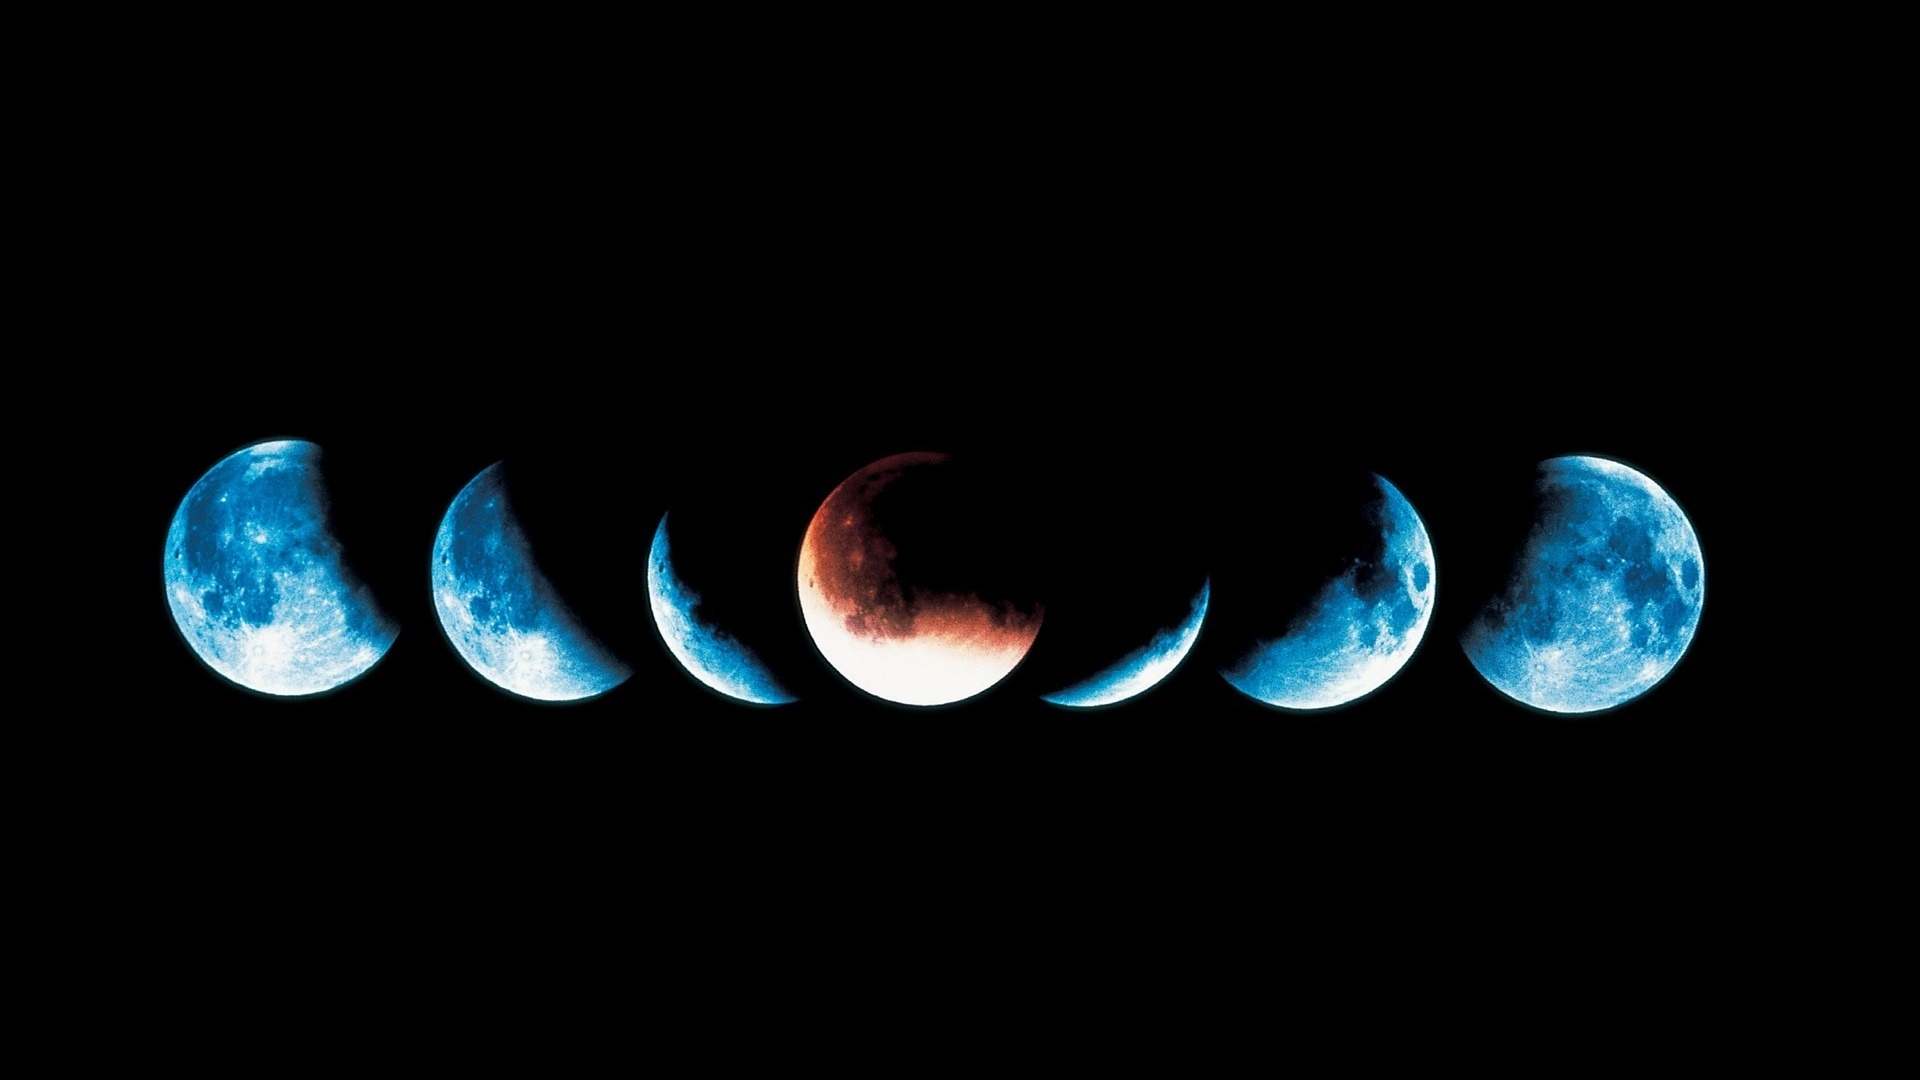 Vòng trăng: Cảm nhận sự lãng mạn và cổ điển của vòng trăng trên bầu trời đêm. Hãy để tâm hồn được thư giãn với hình ảnh thú vị này và tìm ra điều bí ẩn đằng sau vòng trăng.